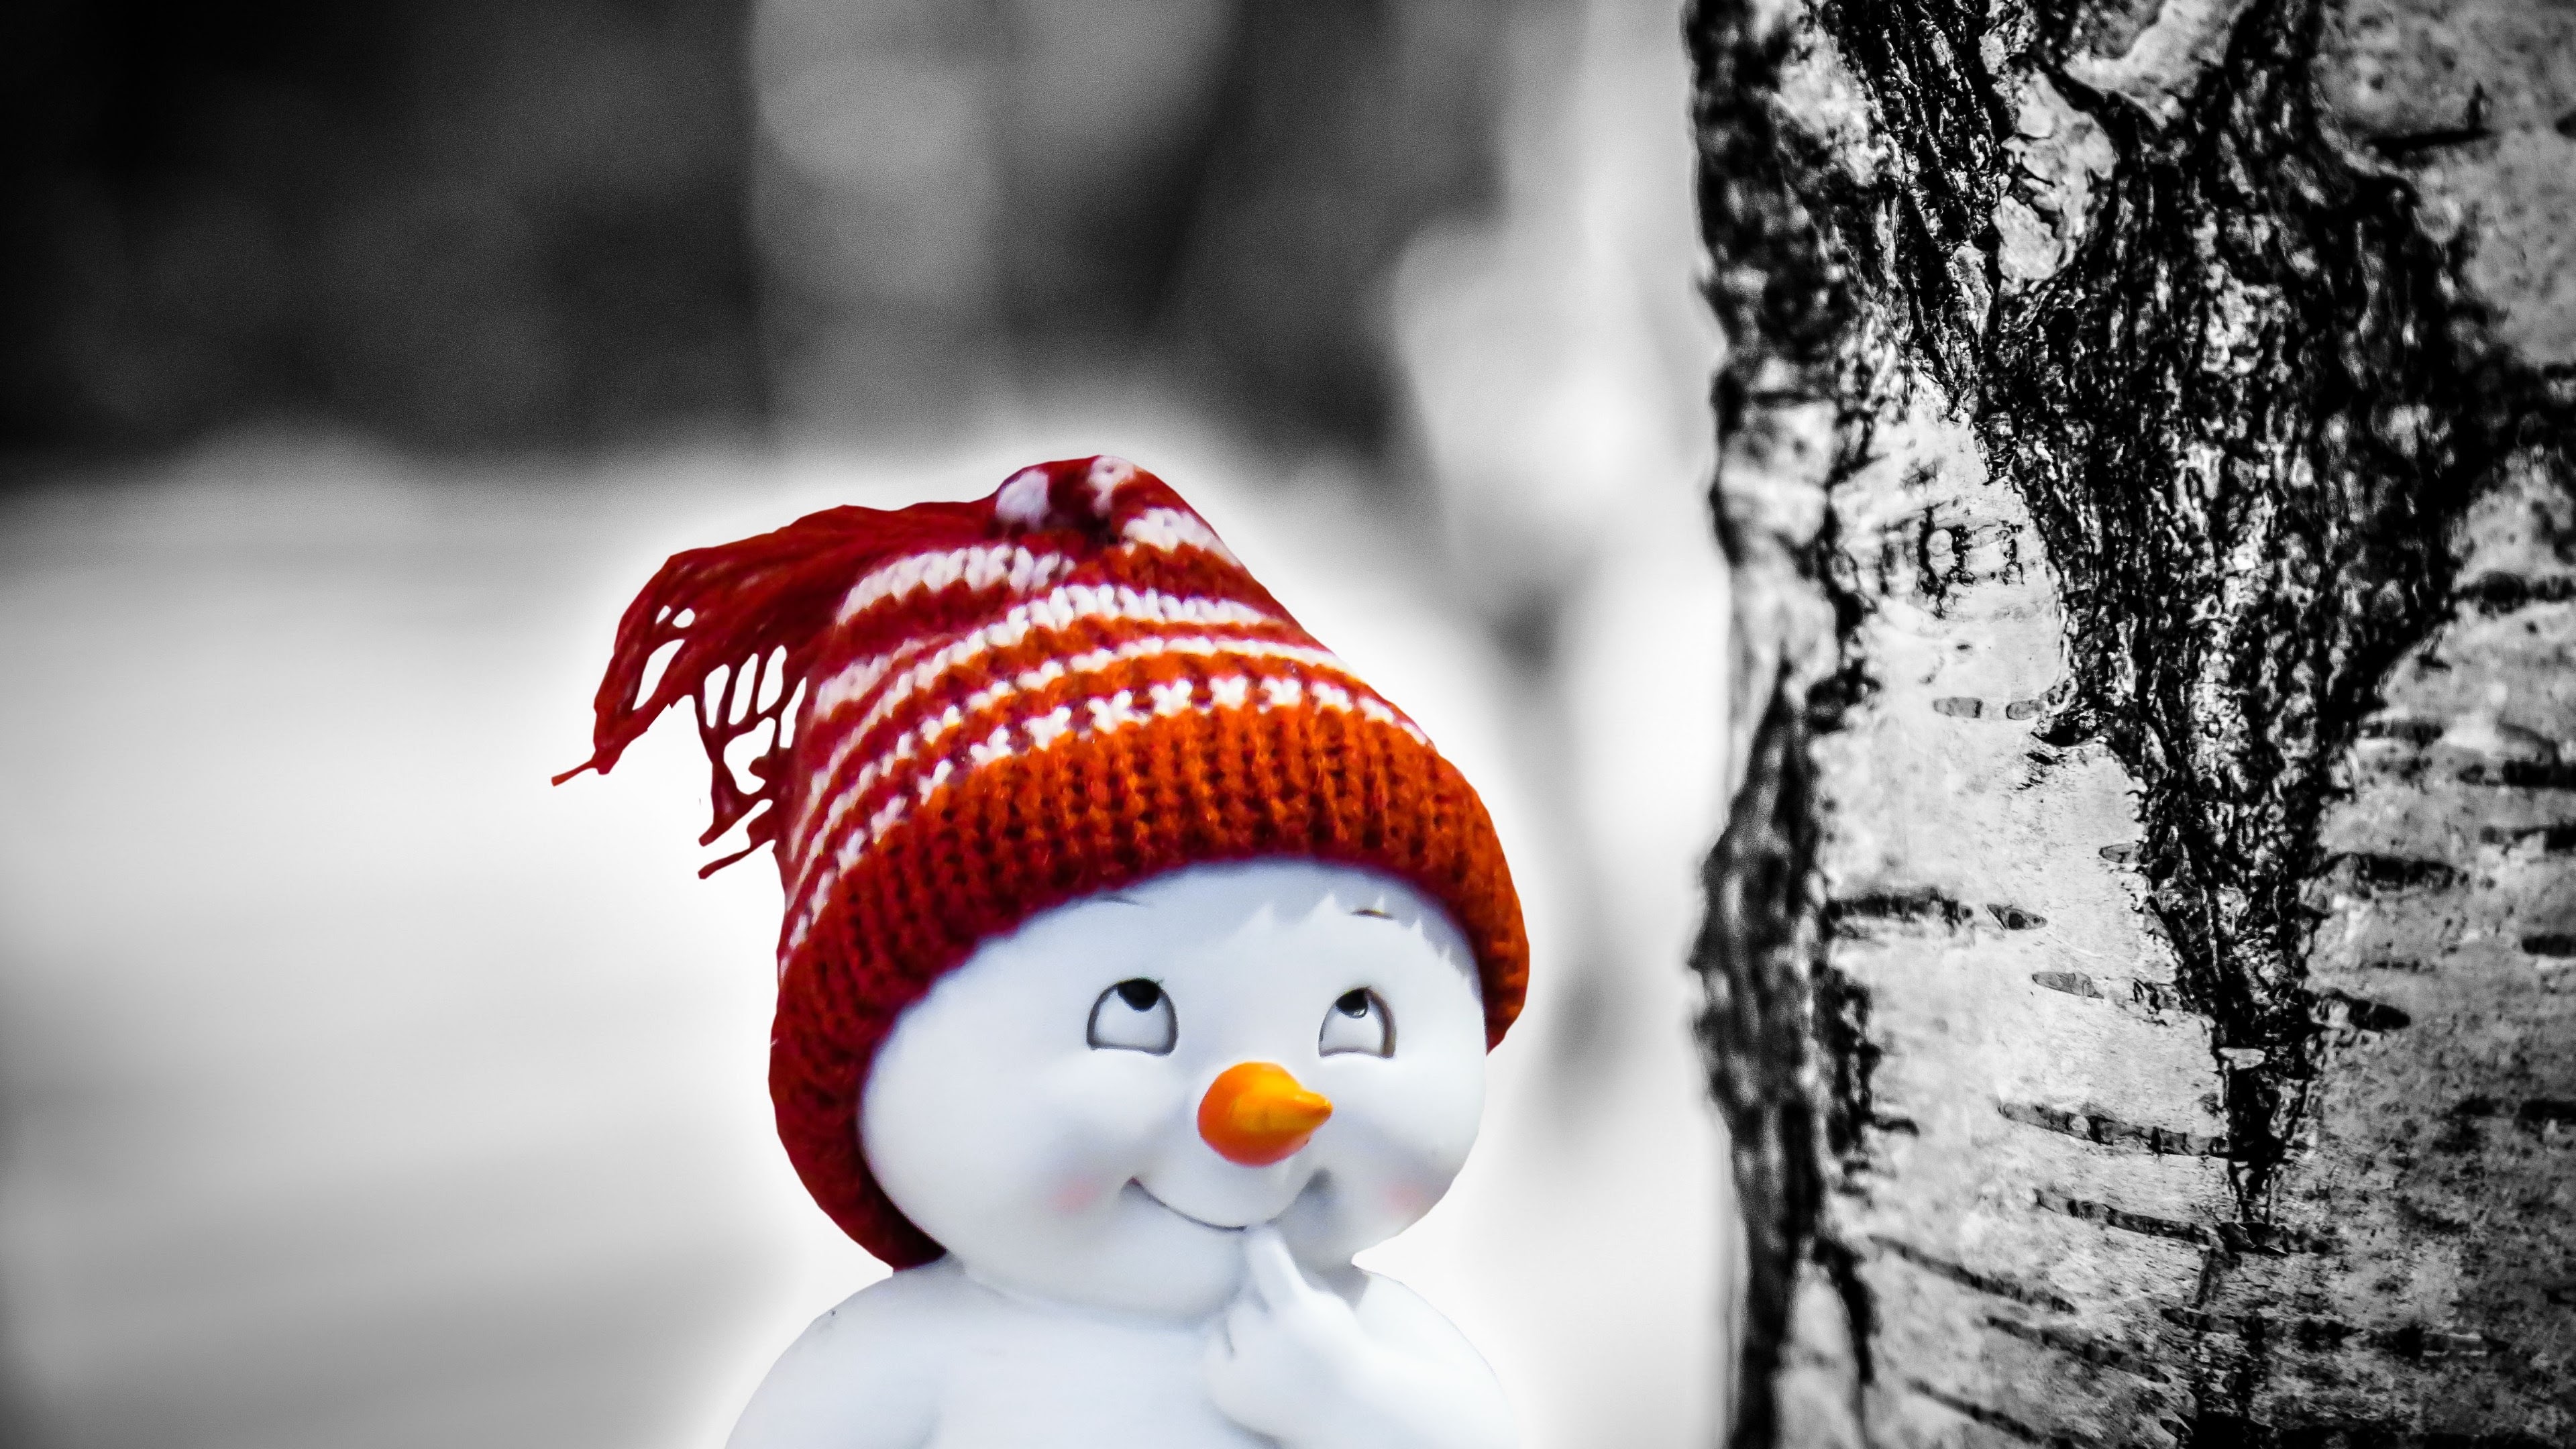 snowman wallpaper hd,snowman,winter,snow,tree,knit cap